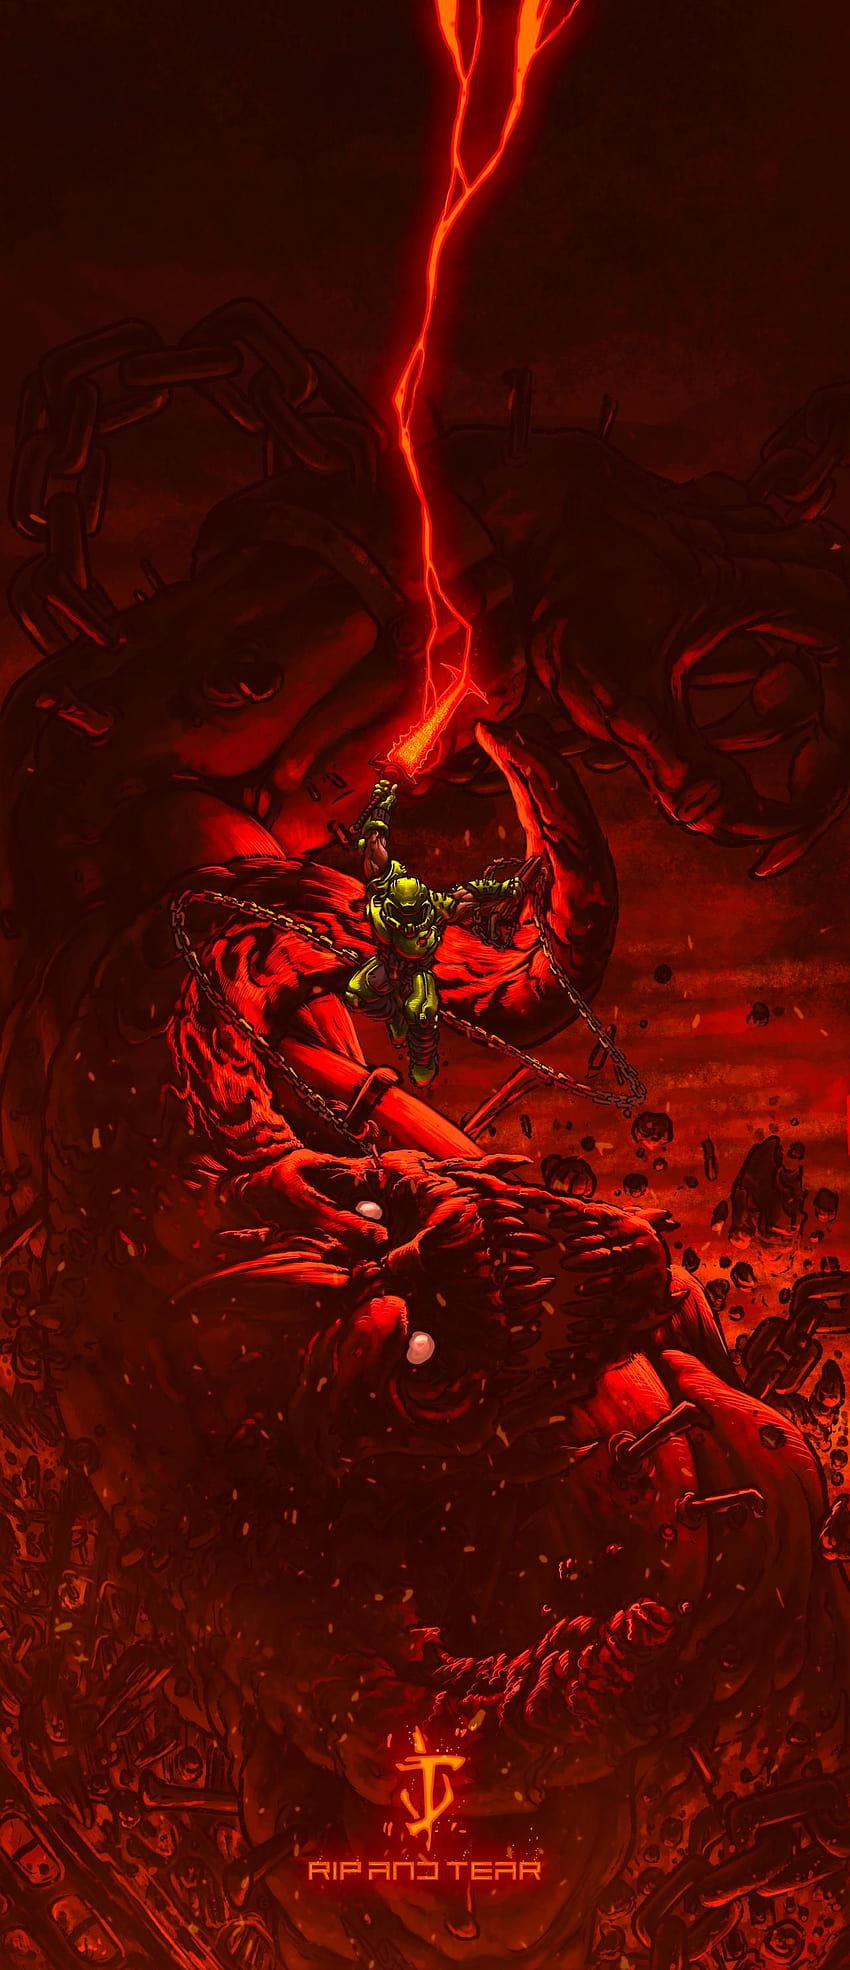 DOOM SLAYER / DOOM ETERNAL von Starvingzombie im Jahr 2020, Doom Slayer-Symbol HD-Handy-Hintergrundbild